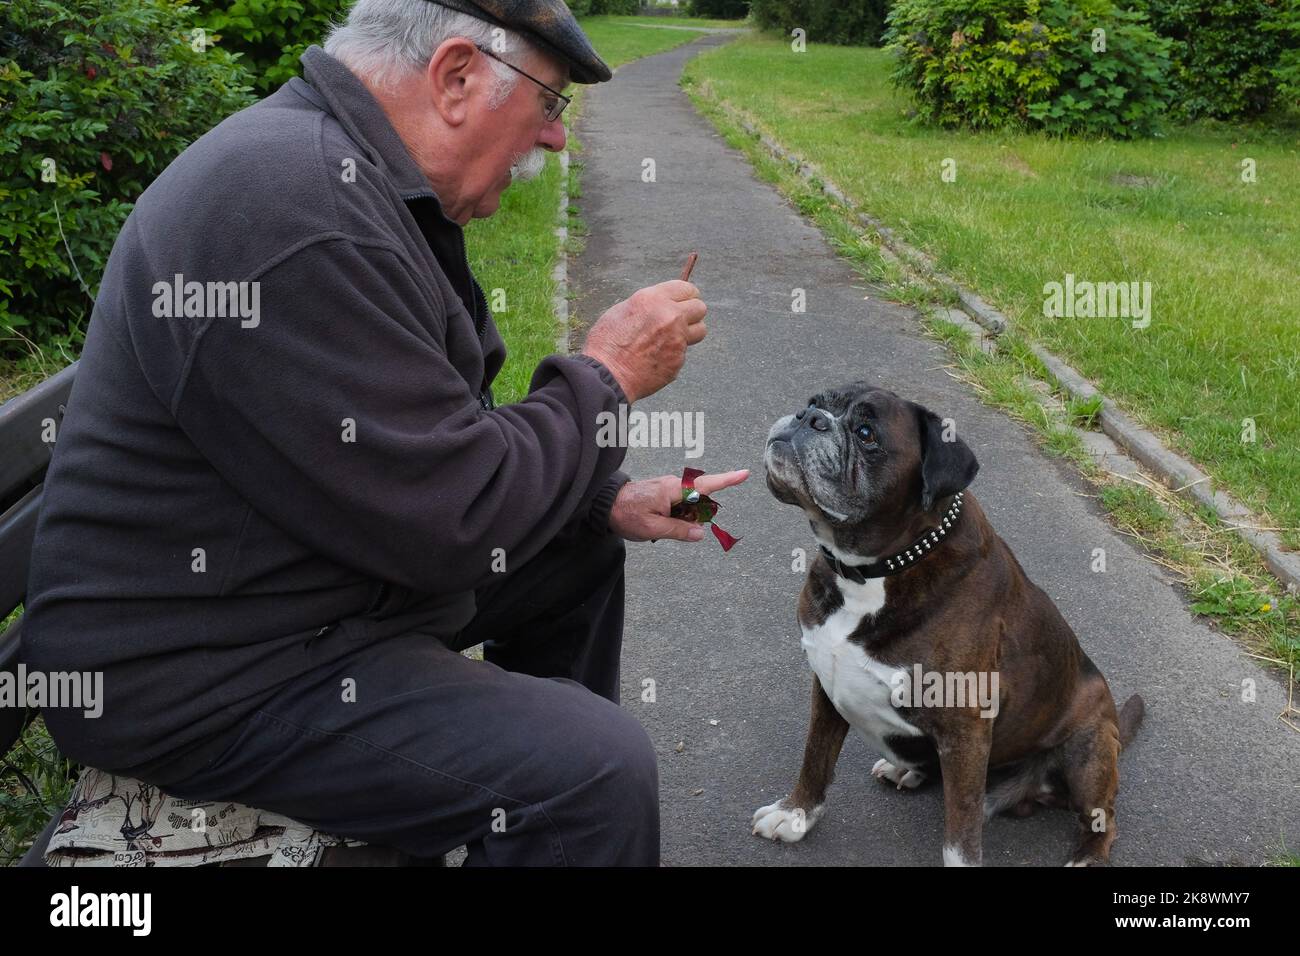 Un homme senior signale à son Olde English Bulldogge de s'asseoir. Le chien d'animal de compagnie attend son régal. Homme avec son meilleur ami dans un parc calme à Bacharach, Allemagne. Banque D'Images